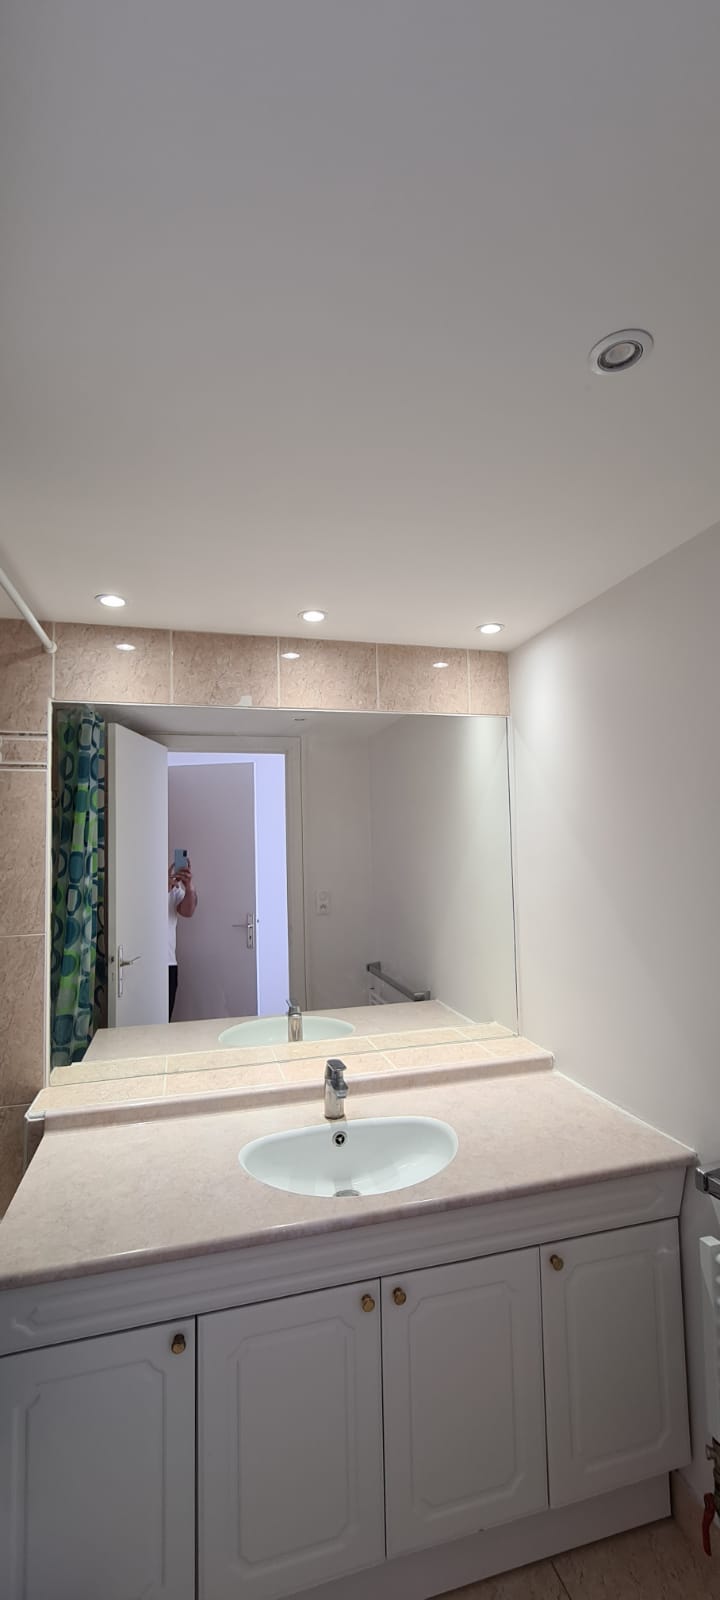 Salle de bain|Faux plafond , éclérage et peinture 
Chantier à Paris 75015 , budget 1600€ .